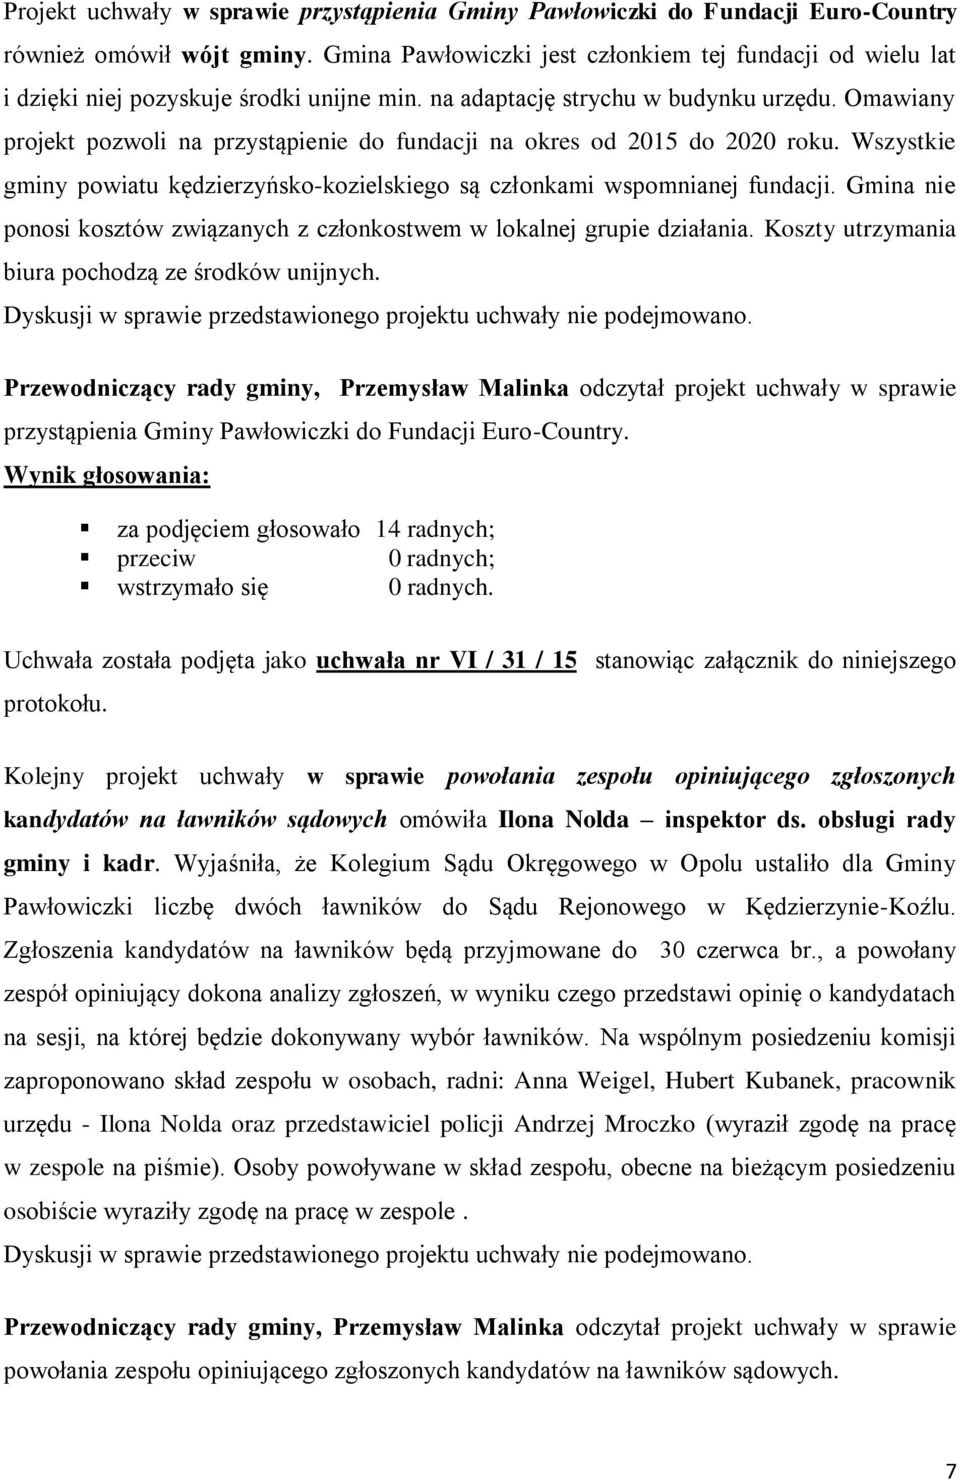 Omawiany projekt pozwoli na przystąpienie do fundacji na okres od 2015 do 2020 roku. Wszystkie gminy powiatu kędzierzyńsko-kozielskiego są członkami wspomnianej fundacji.